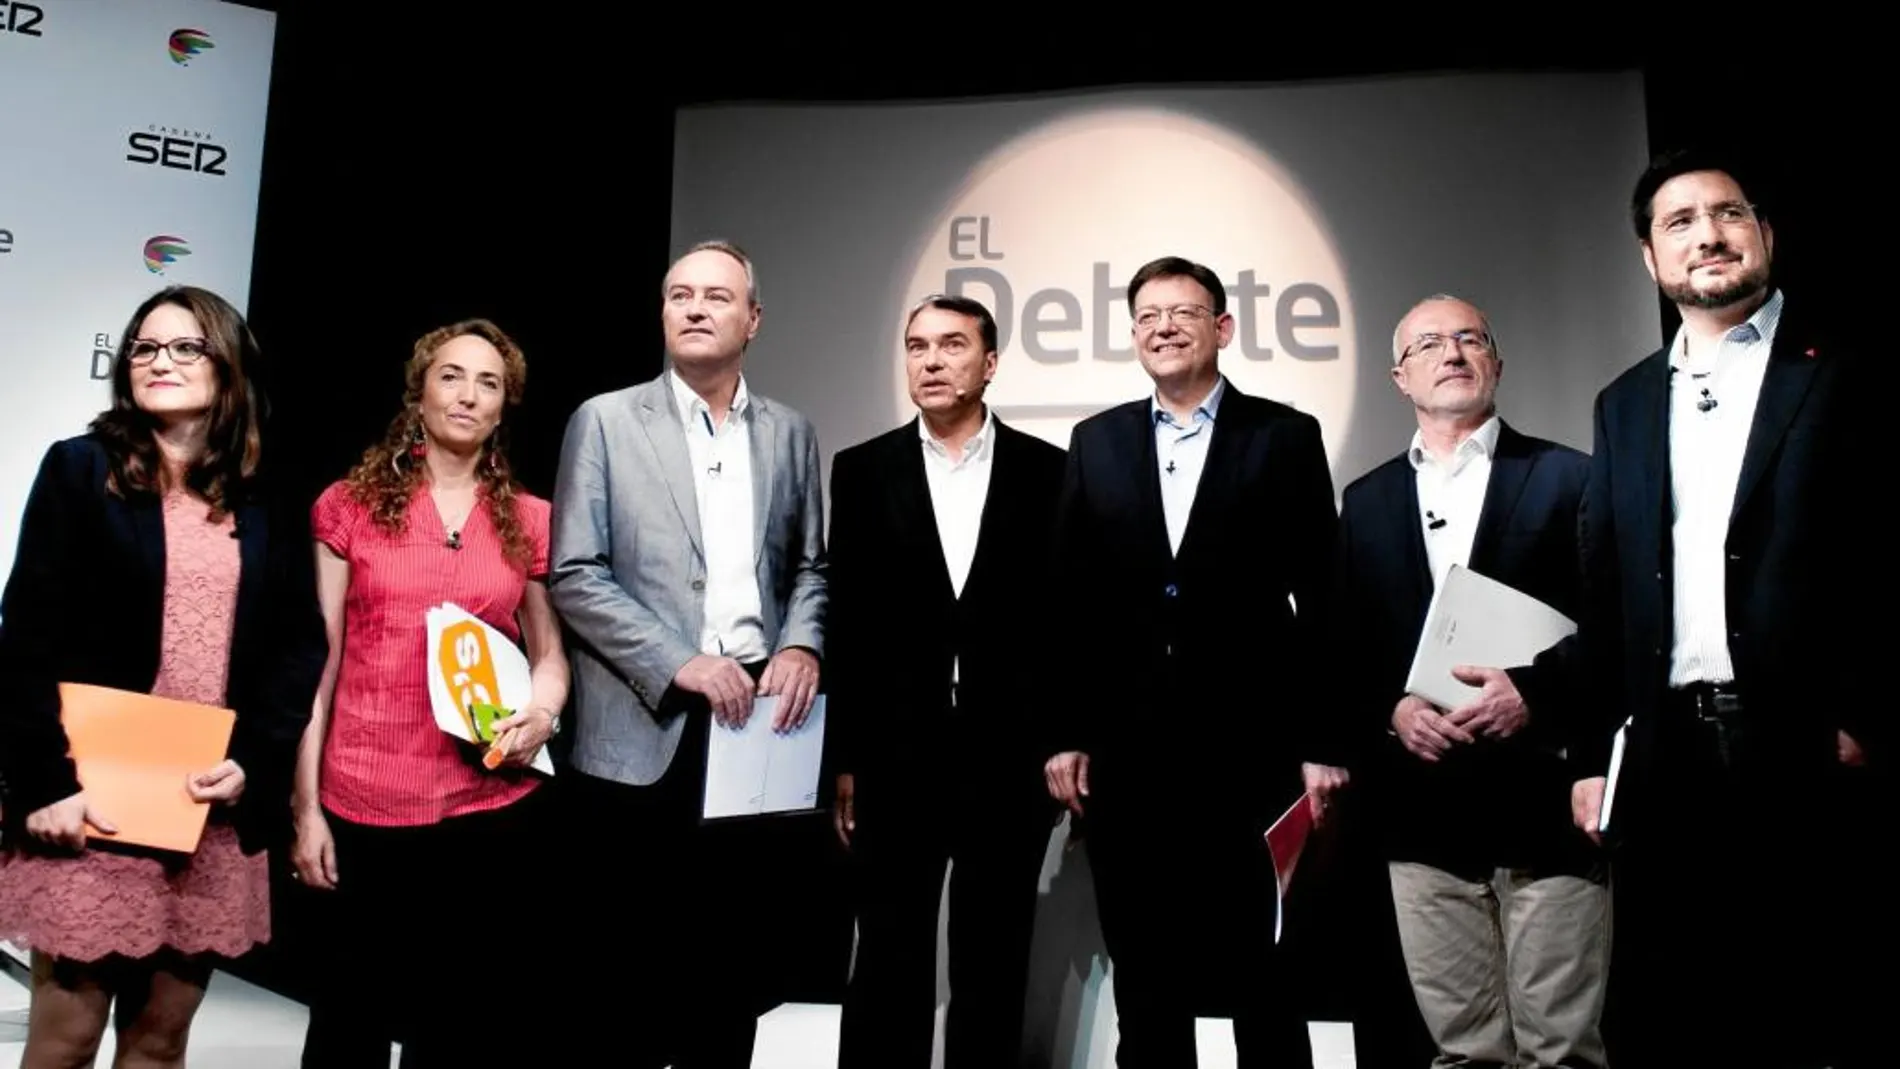 Oltra (Compromís), Punset (Ciudadanos), Fabra (PP), el moderador Guzmán, Puig (PSPV), Montiel (Podemos), y Blanco (EU)